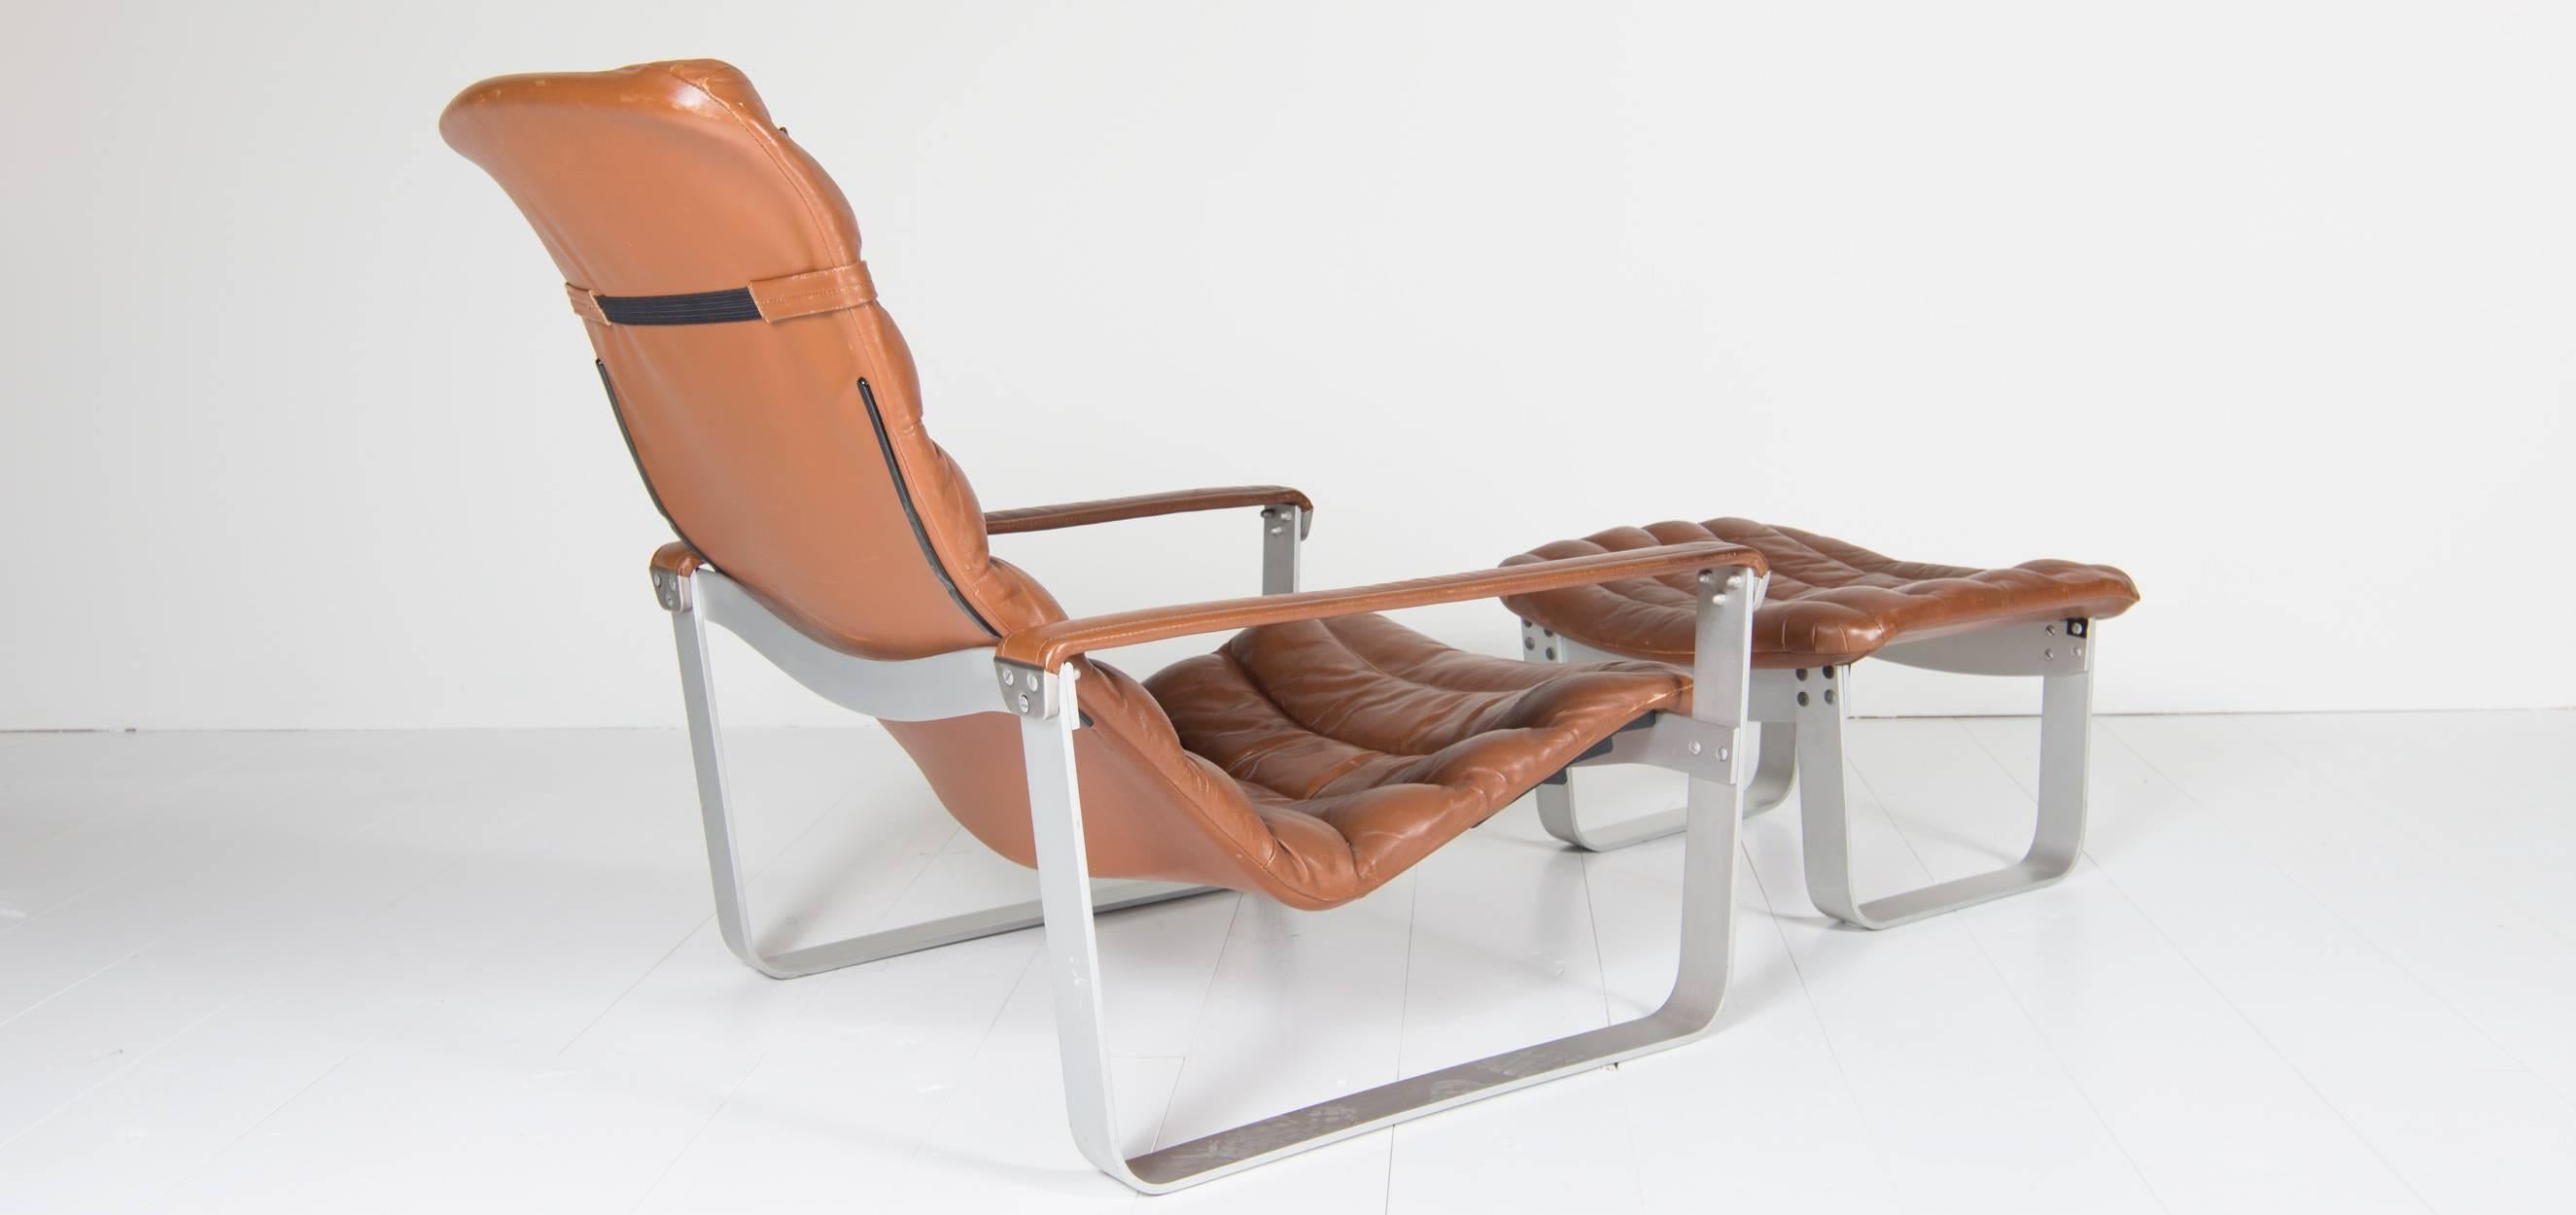 Finnish Asko Chair Model Pulkka Designed by Ilmari Lappalainen, 1968